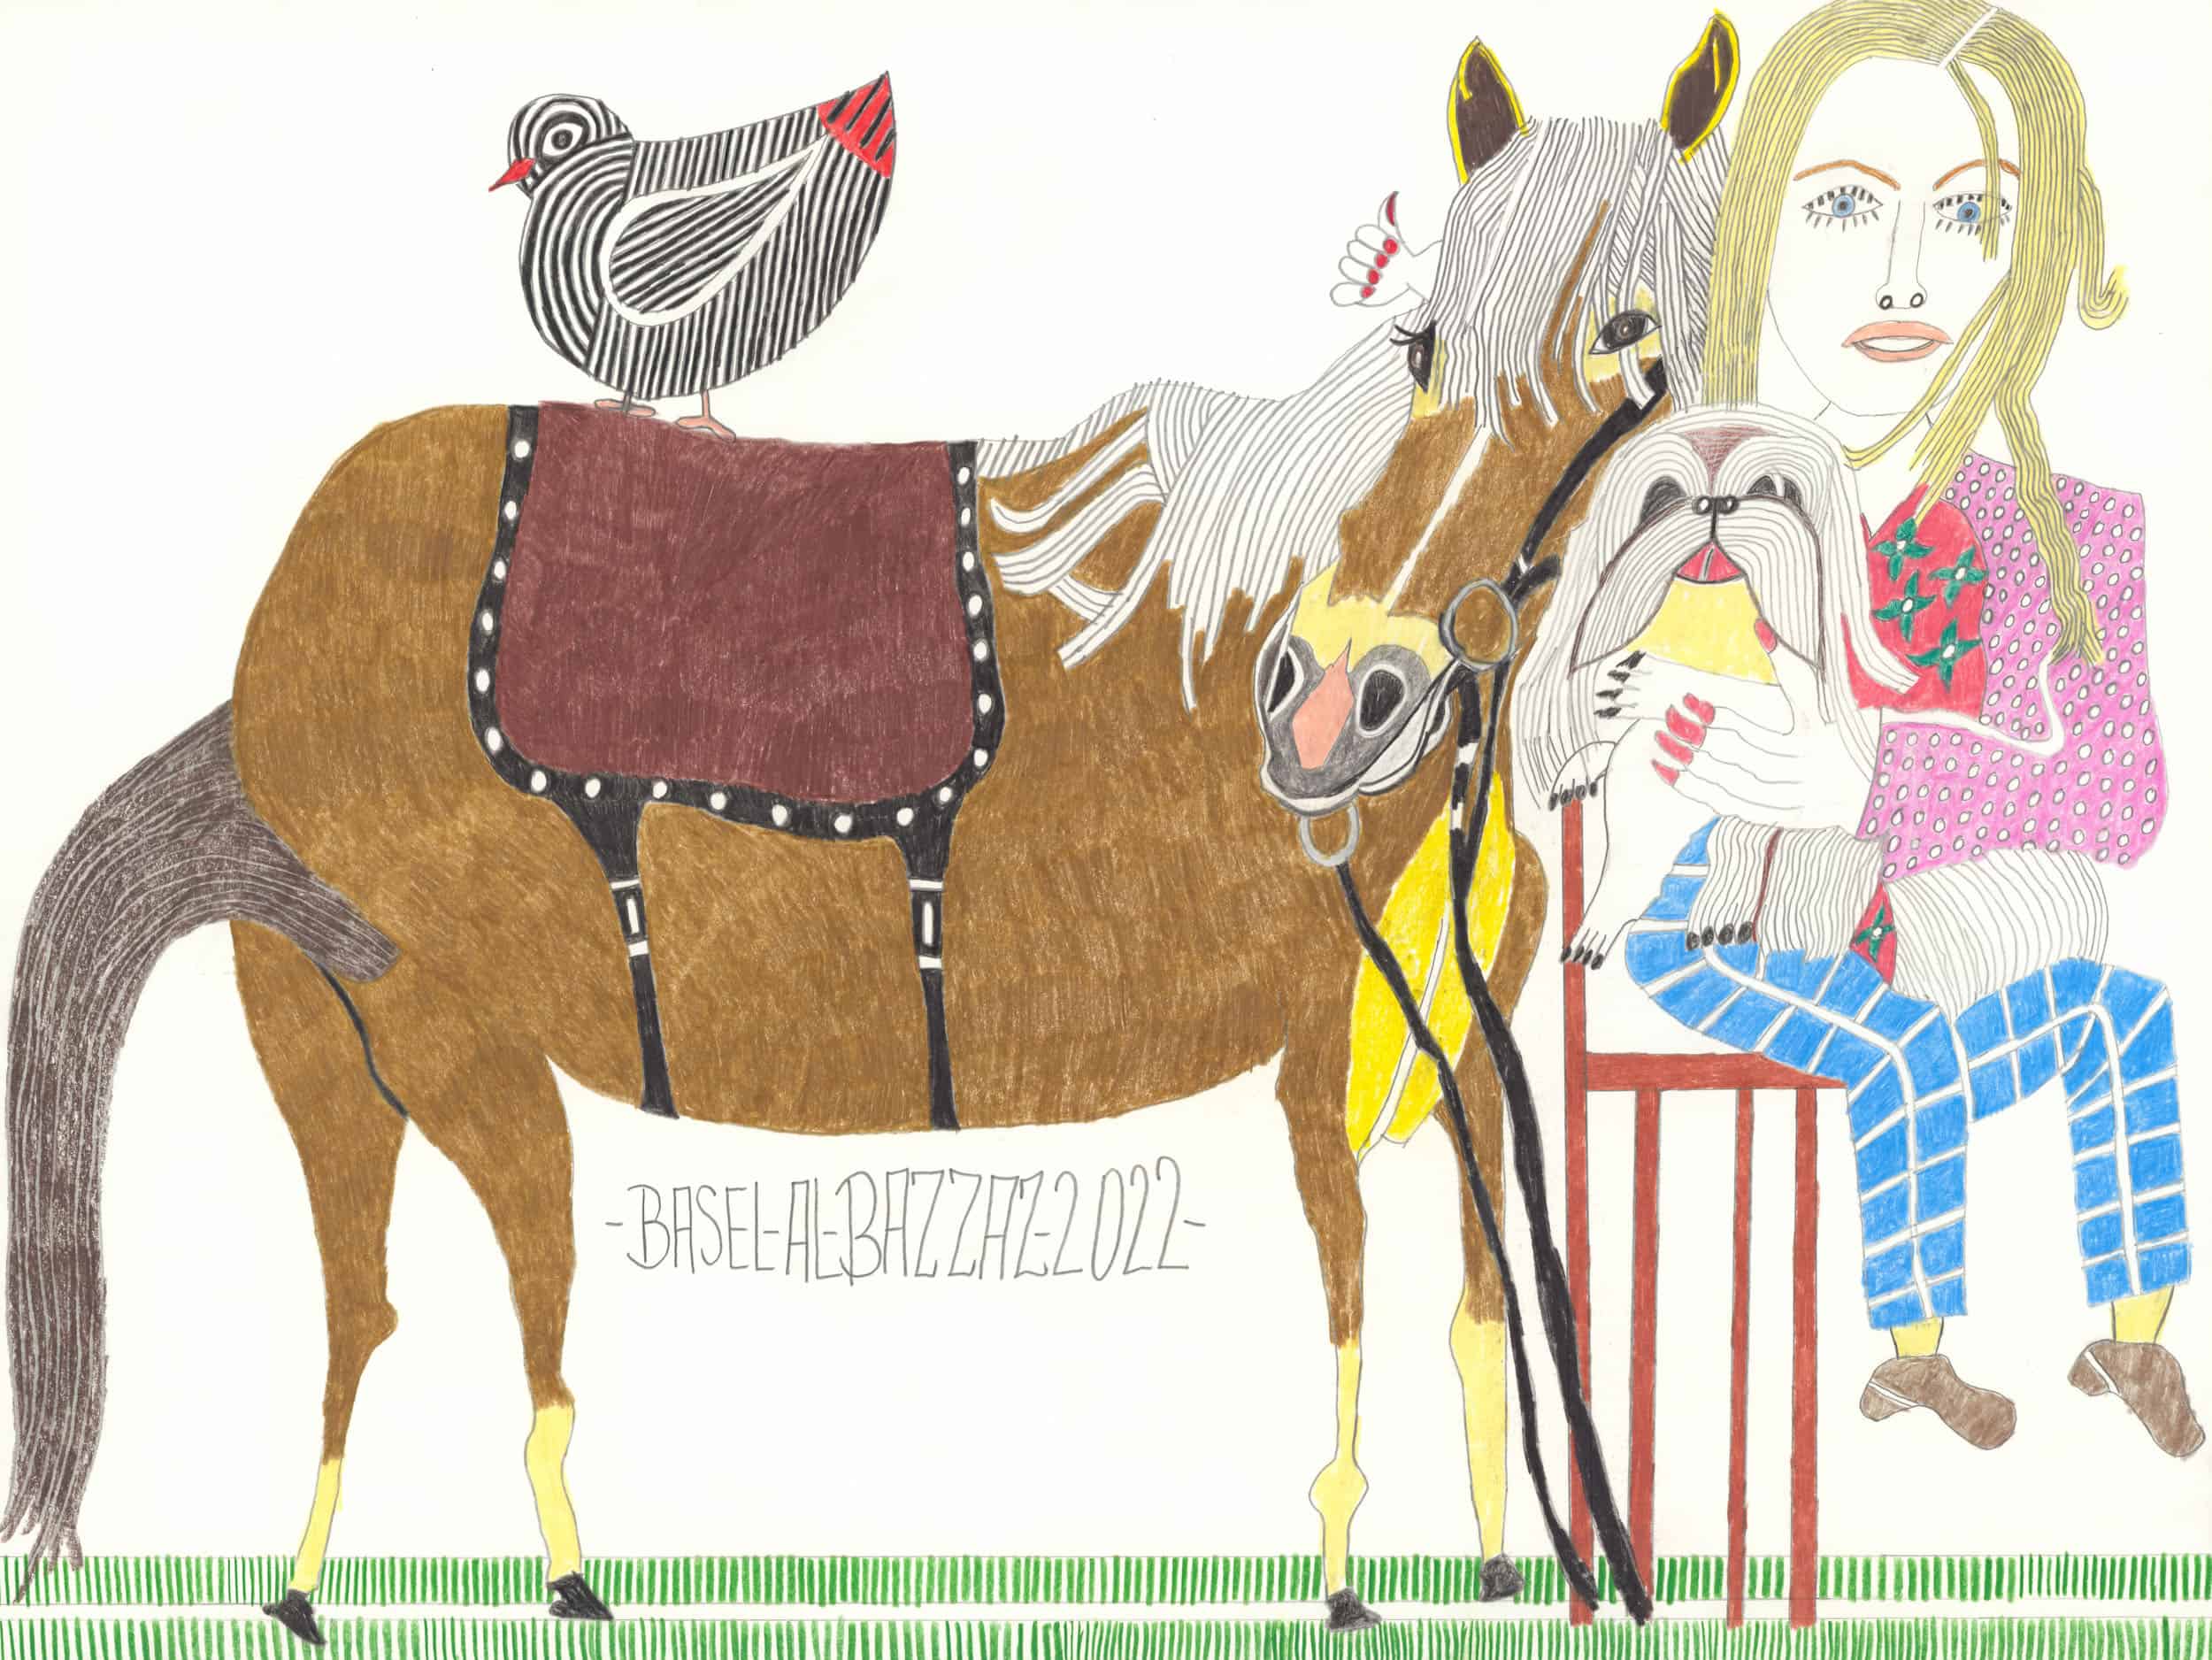 al-bazzaz basel - Vogel und Pferd / Bird and horse